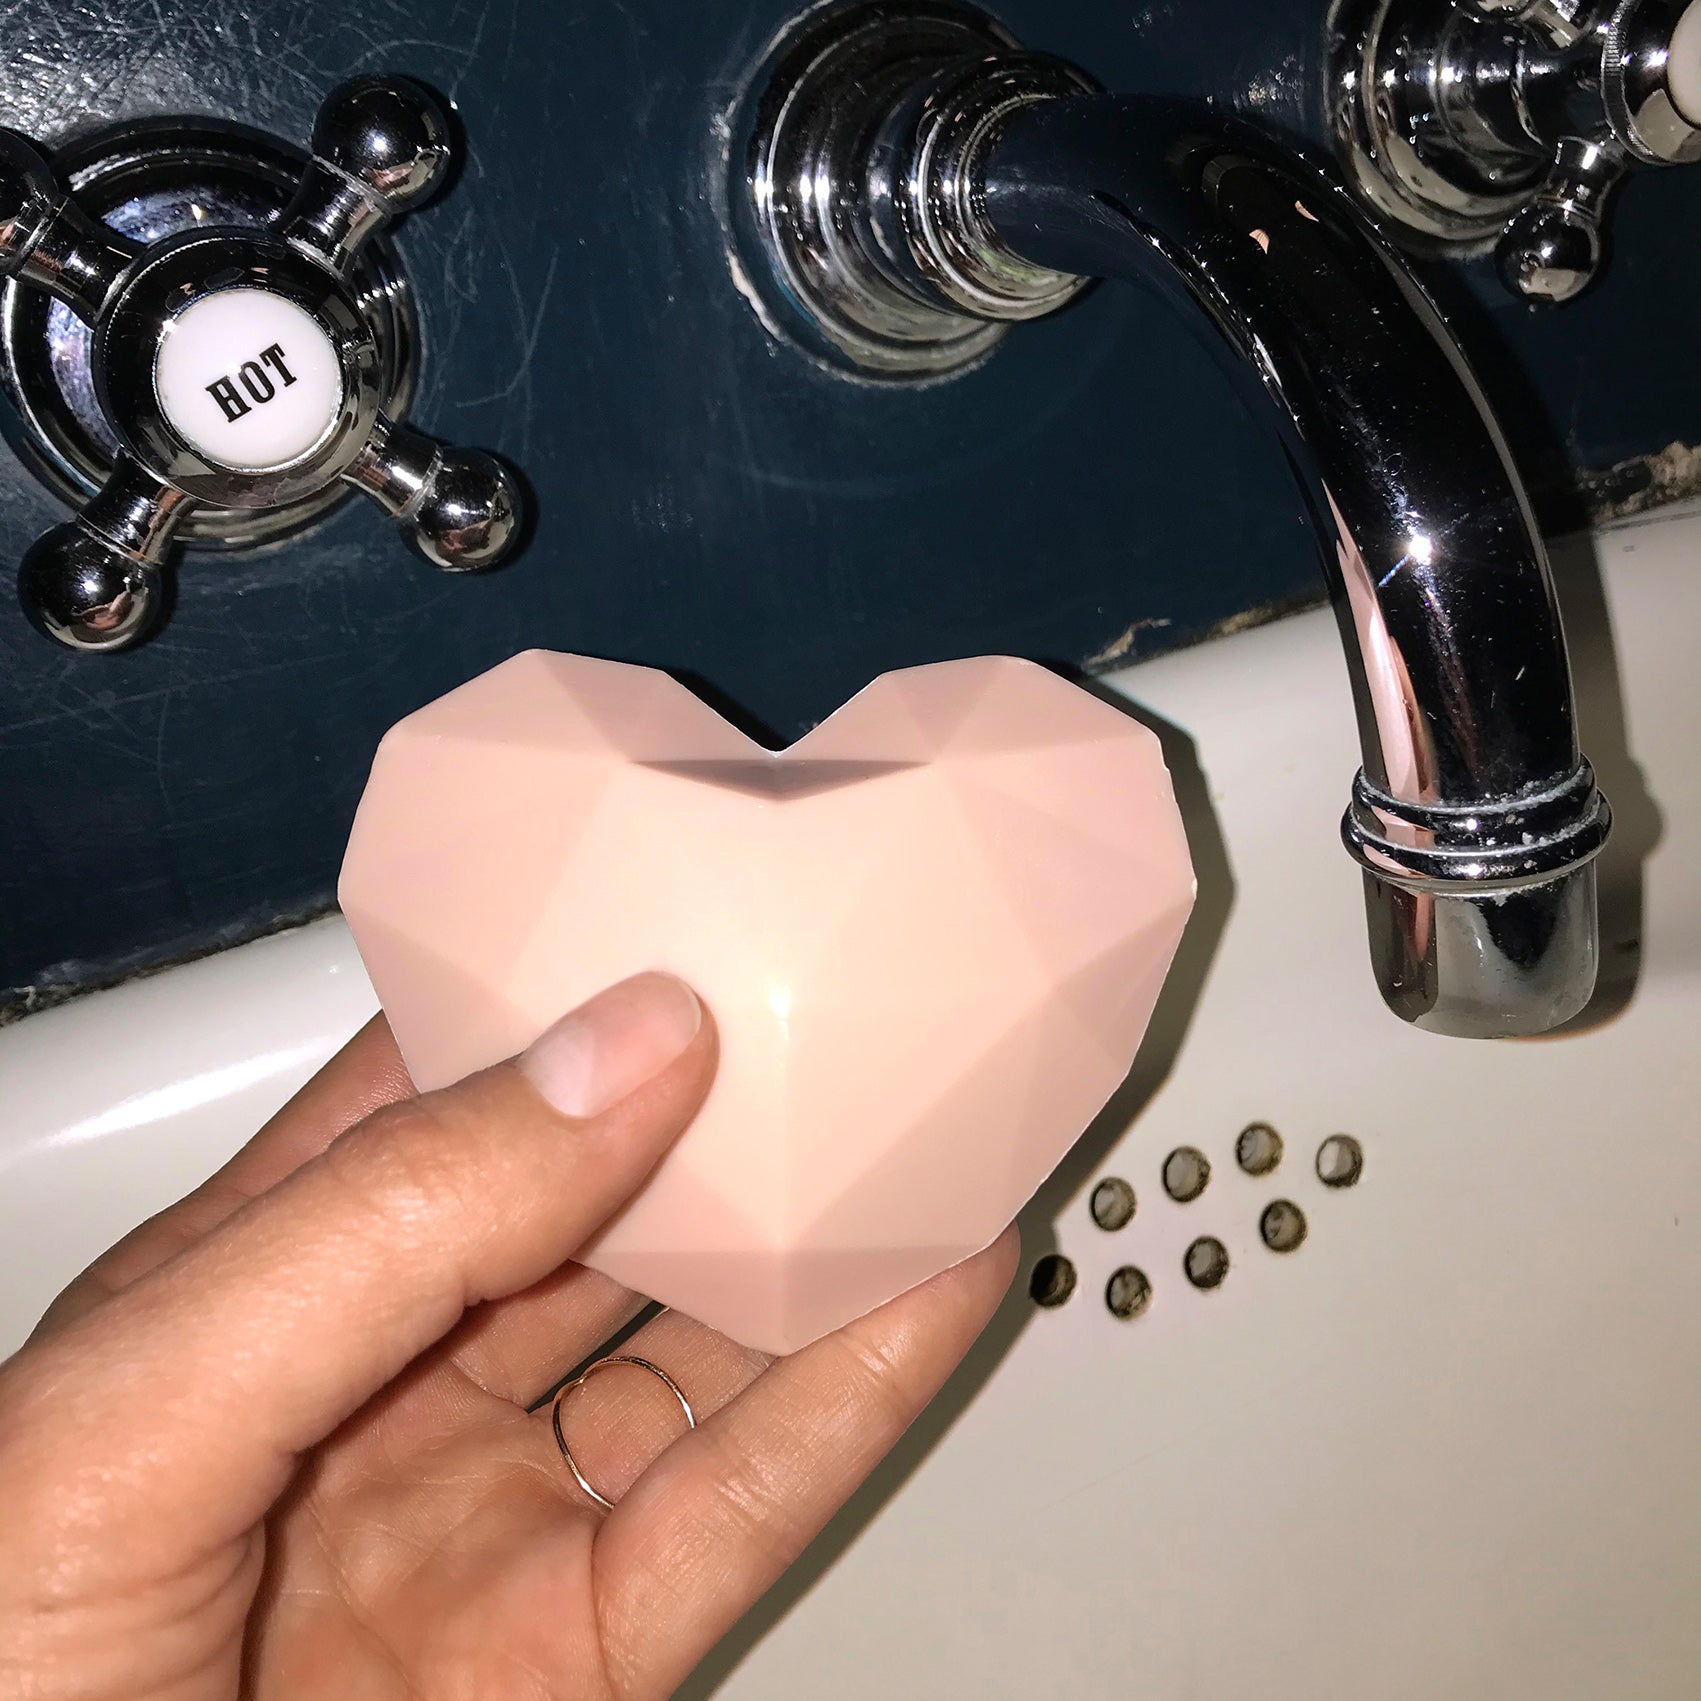 heart soap herzseife in der hand neben wasserhahn